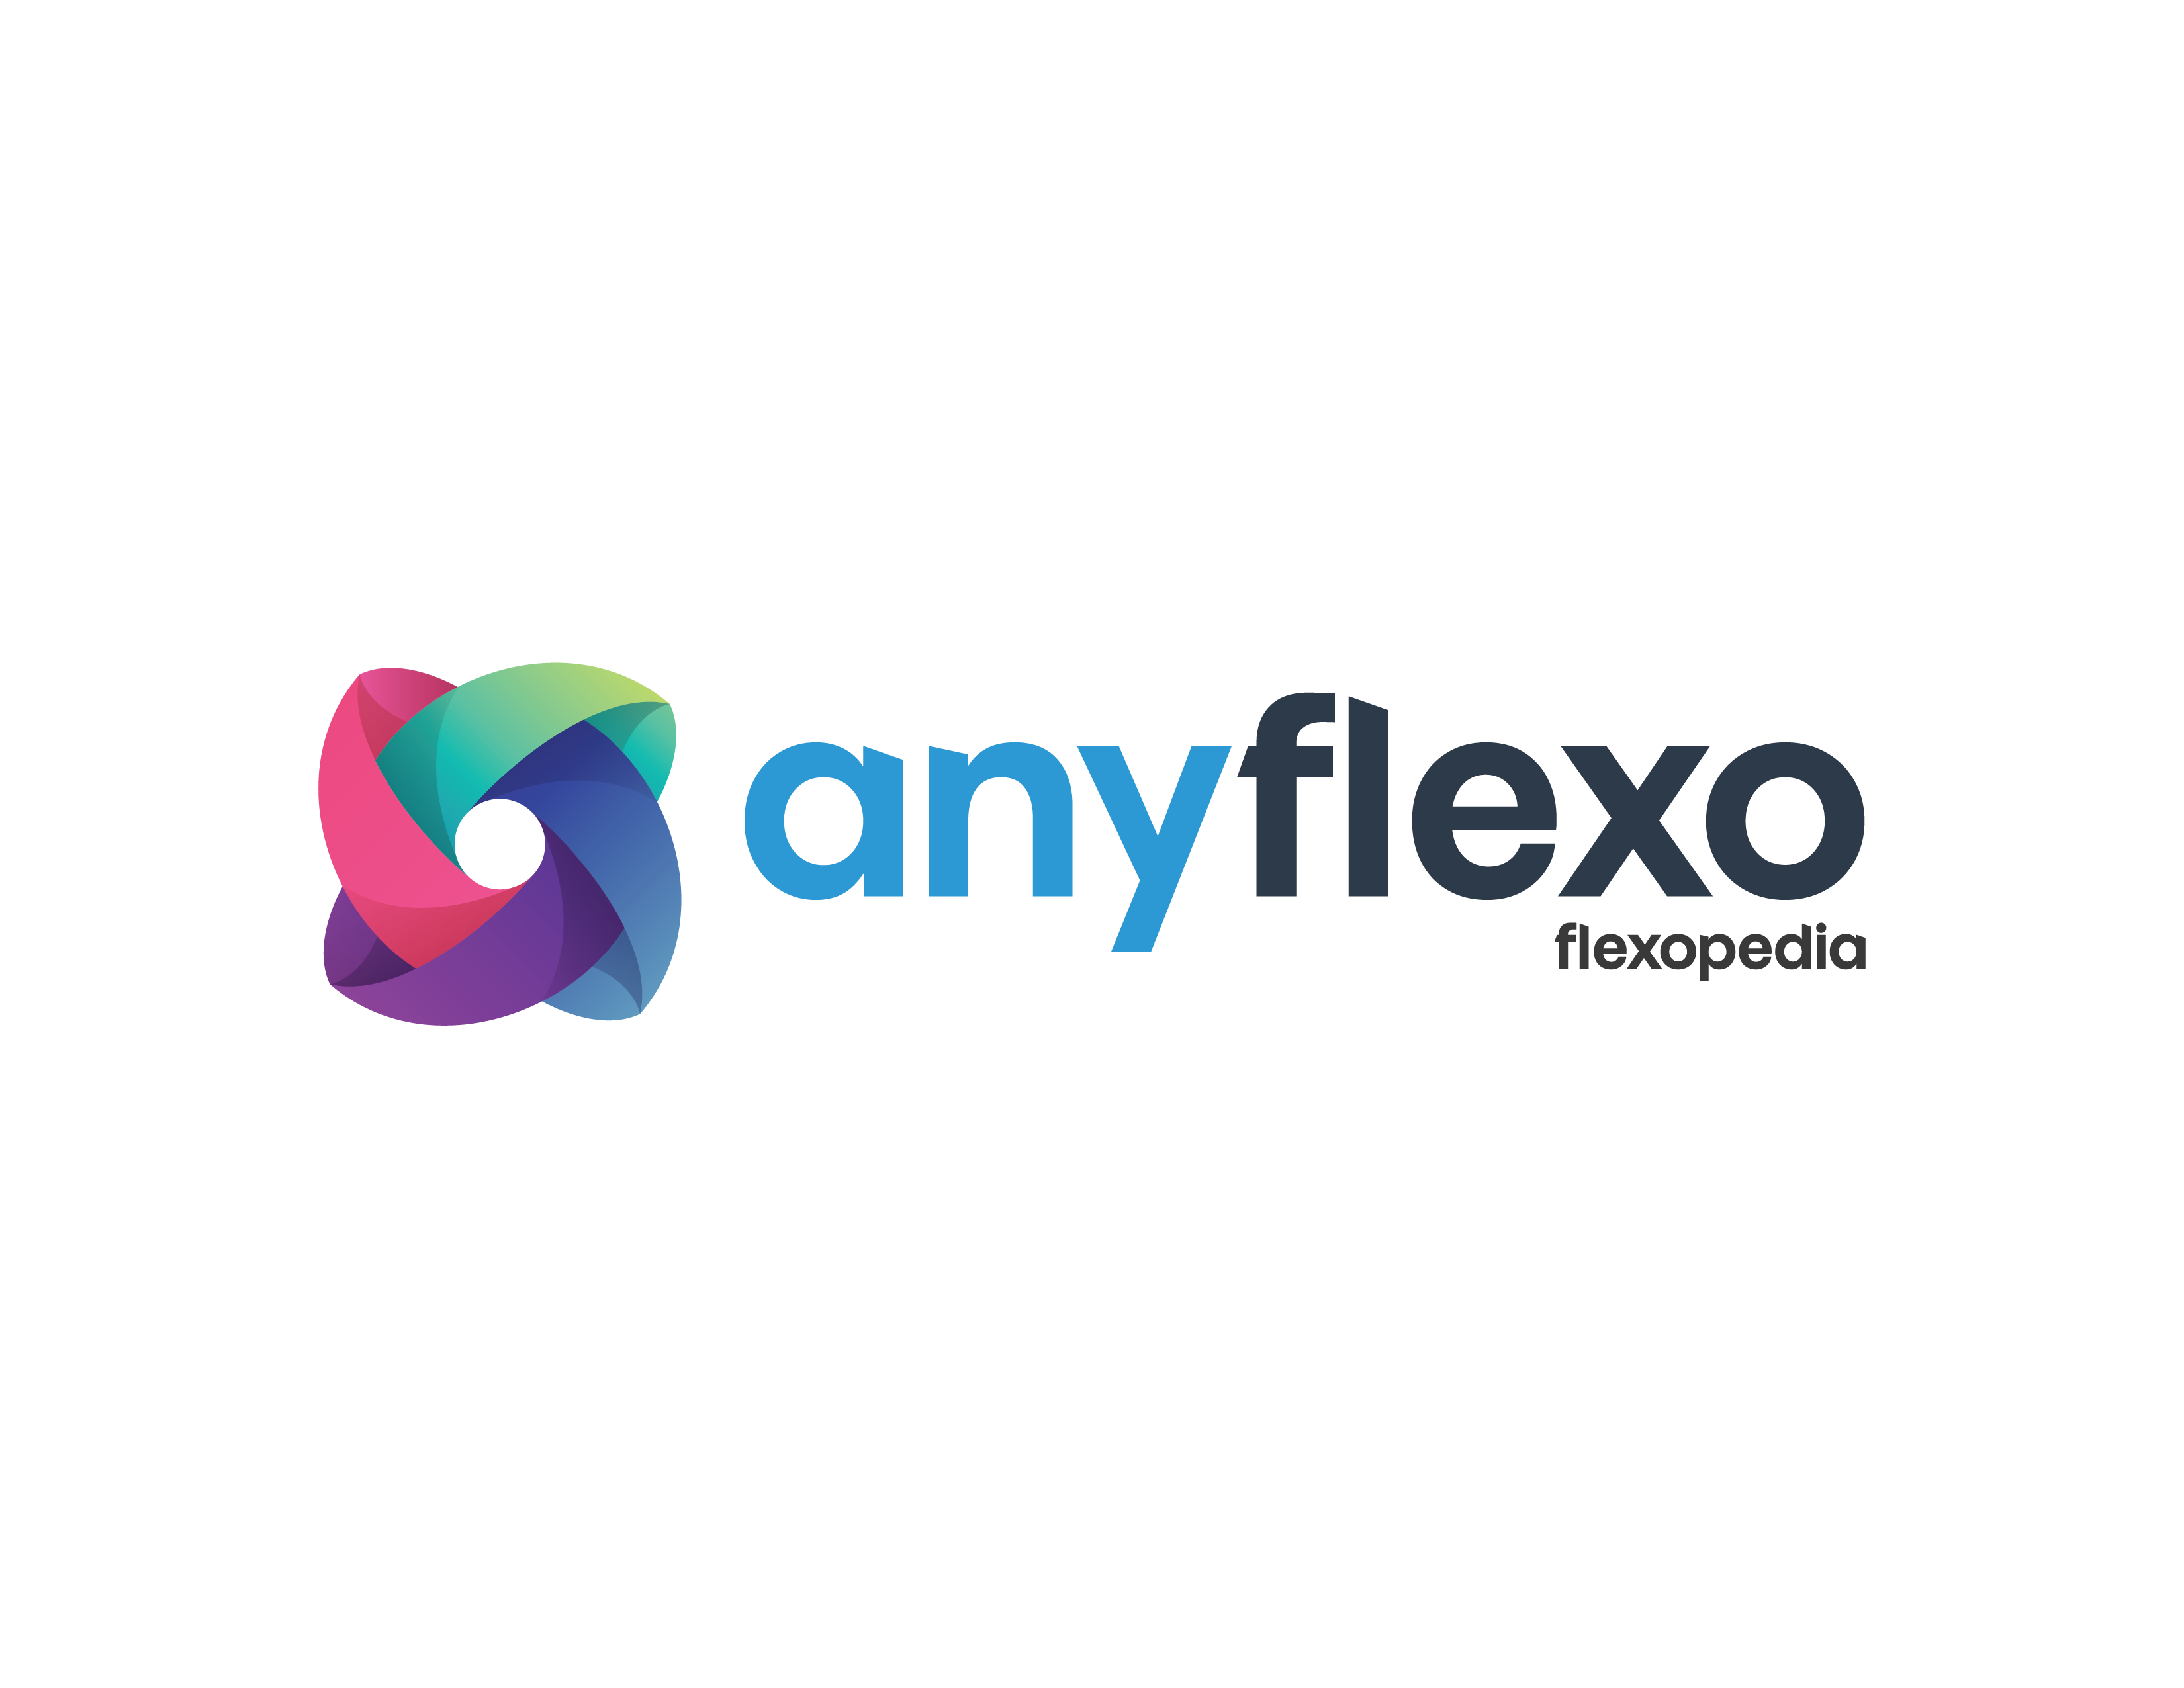 Conocimientos de Anyflexo Flexopedia para impresión flexográfica